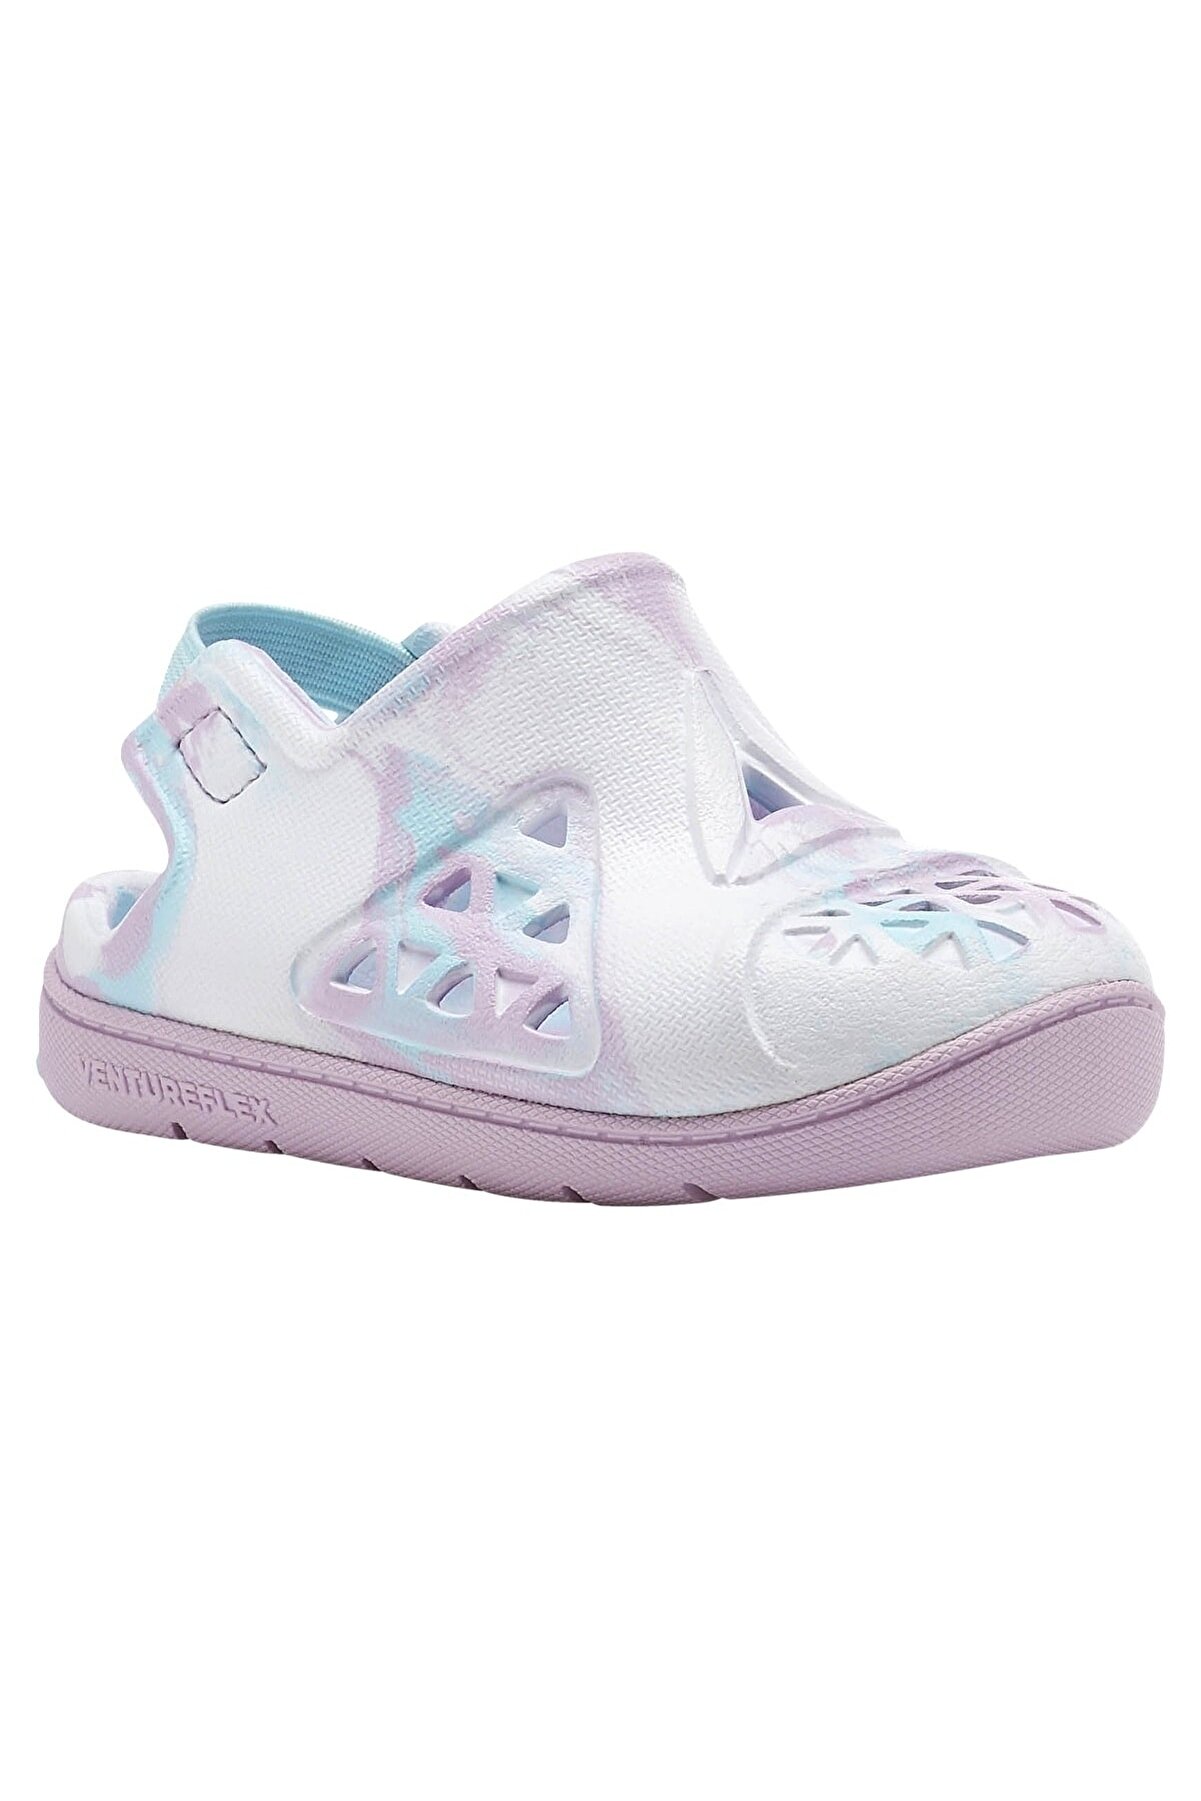 Reebok Ekru Kız Bebek Sandalet Ventureflex Splash